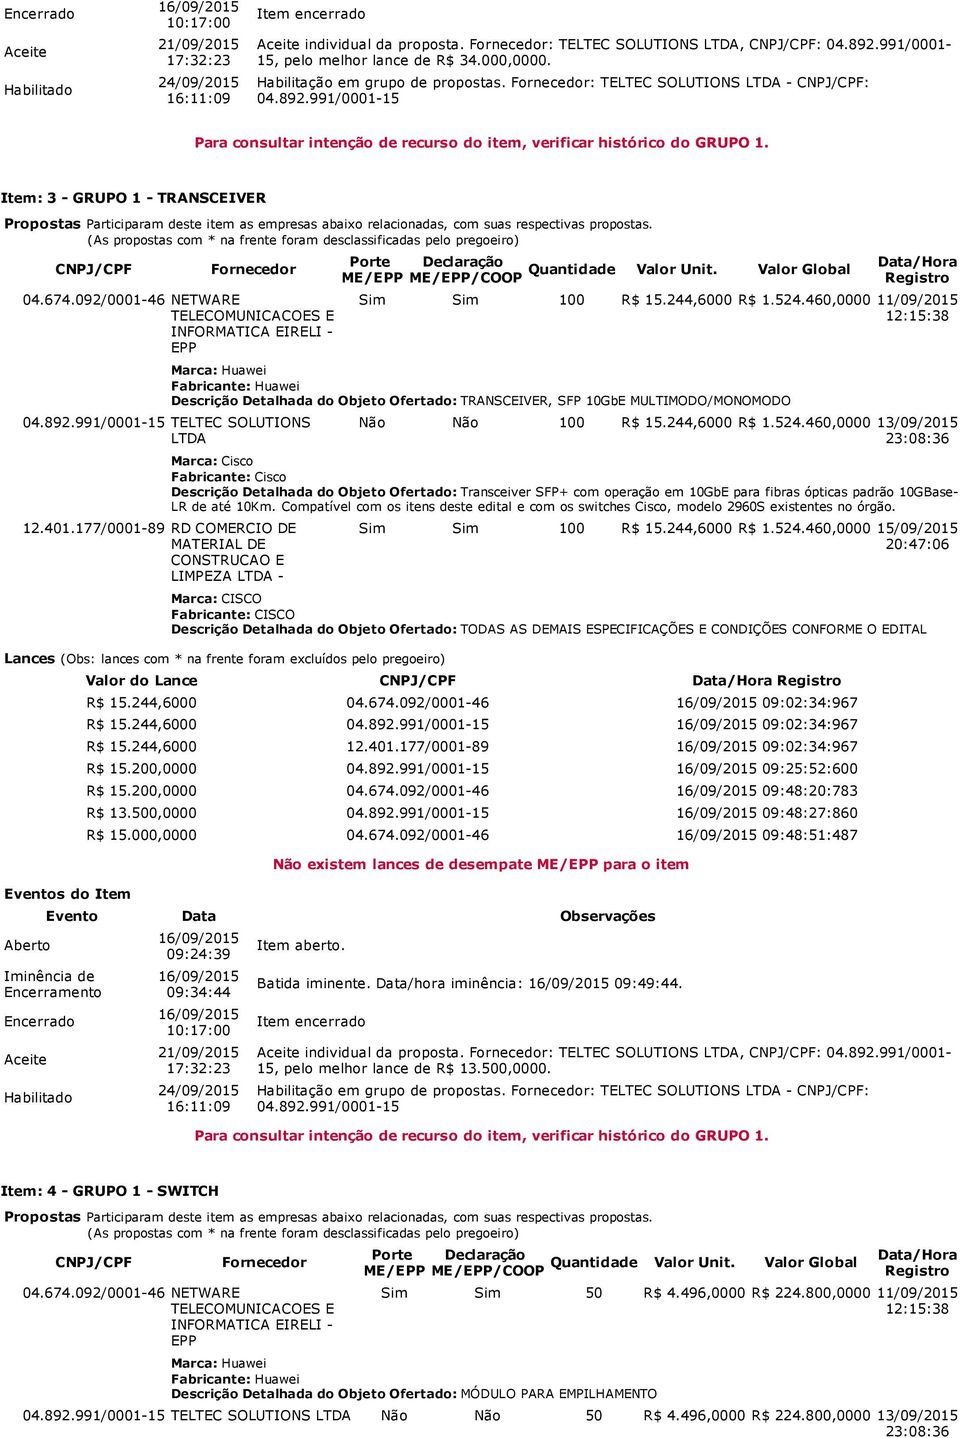 460,0000 11/09/2015 Marca: Huawei Fabricante: Huawei Descrição Detalhada do Objeto Ofertado: TRANSCEIVER, SFP 10GbE MULTIMODO/MONOMODO Não Não 100 R$ 15.244,6000 R$ 1.524.